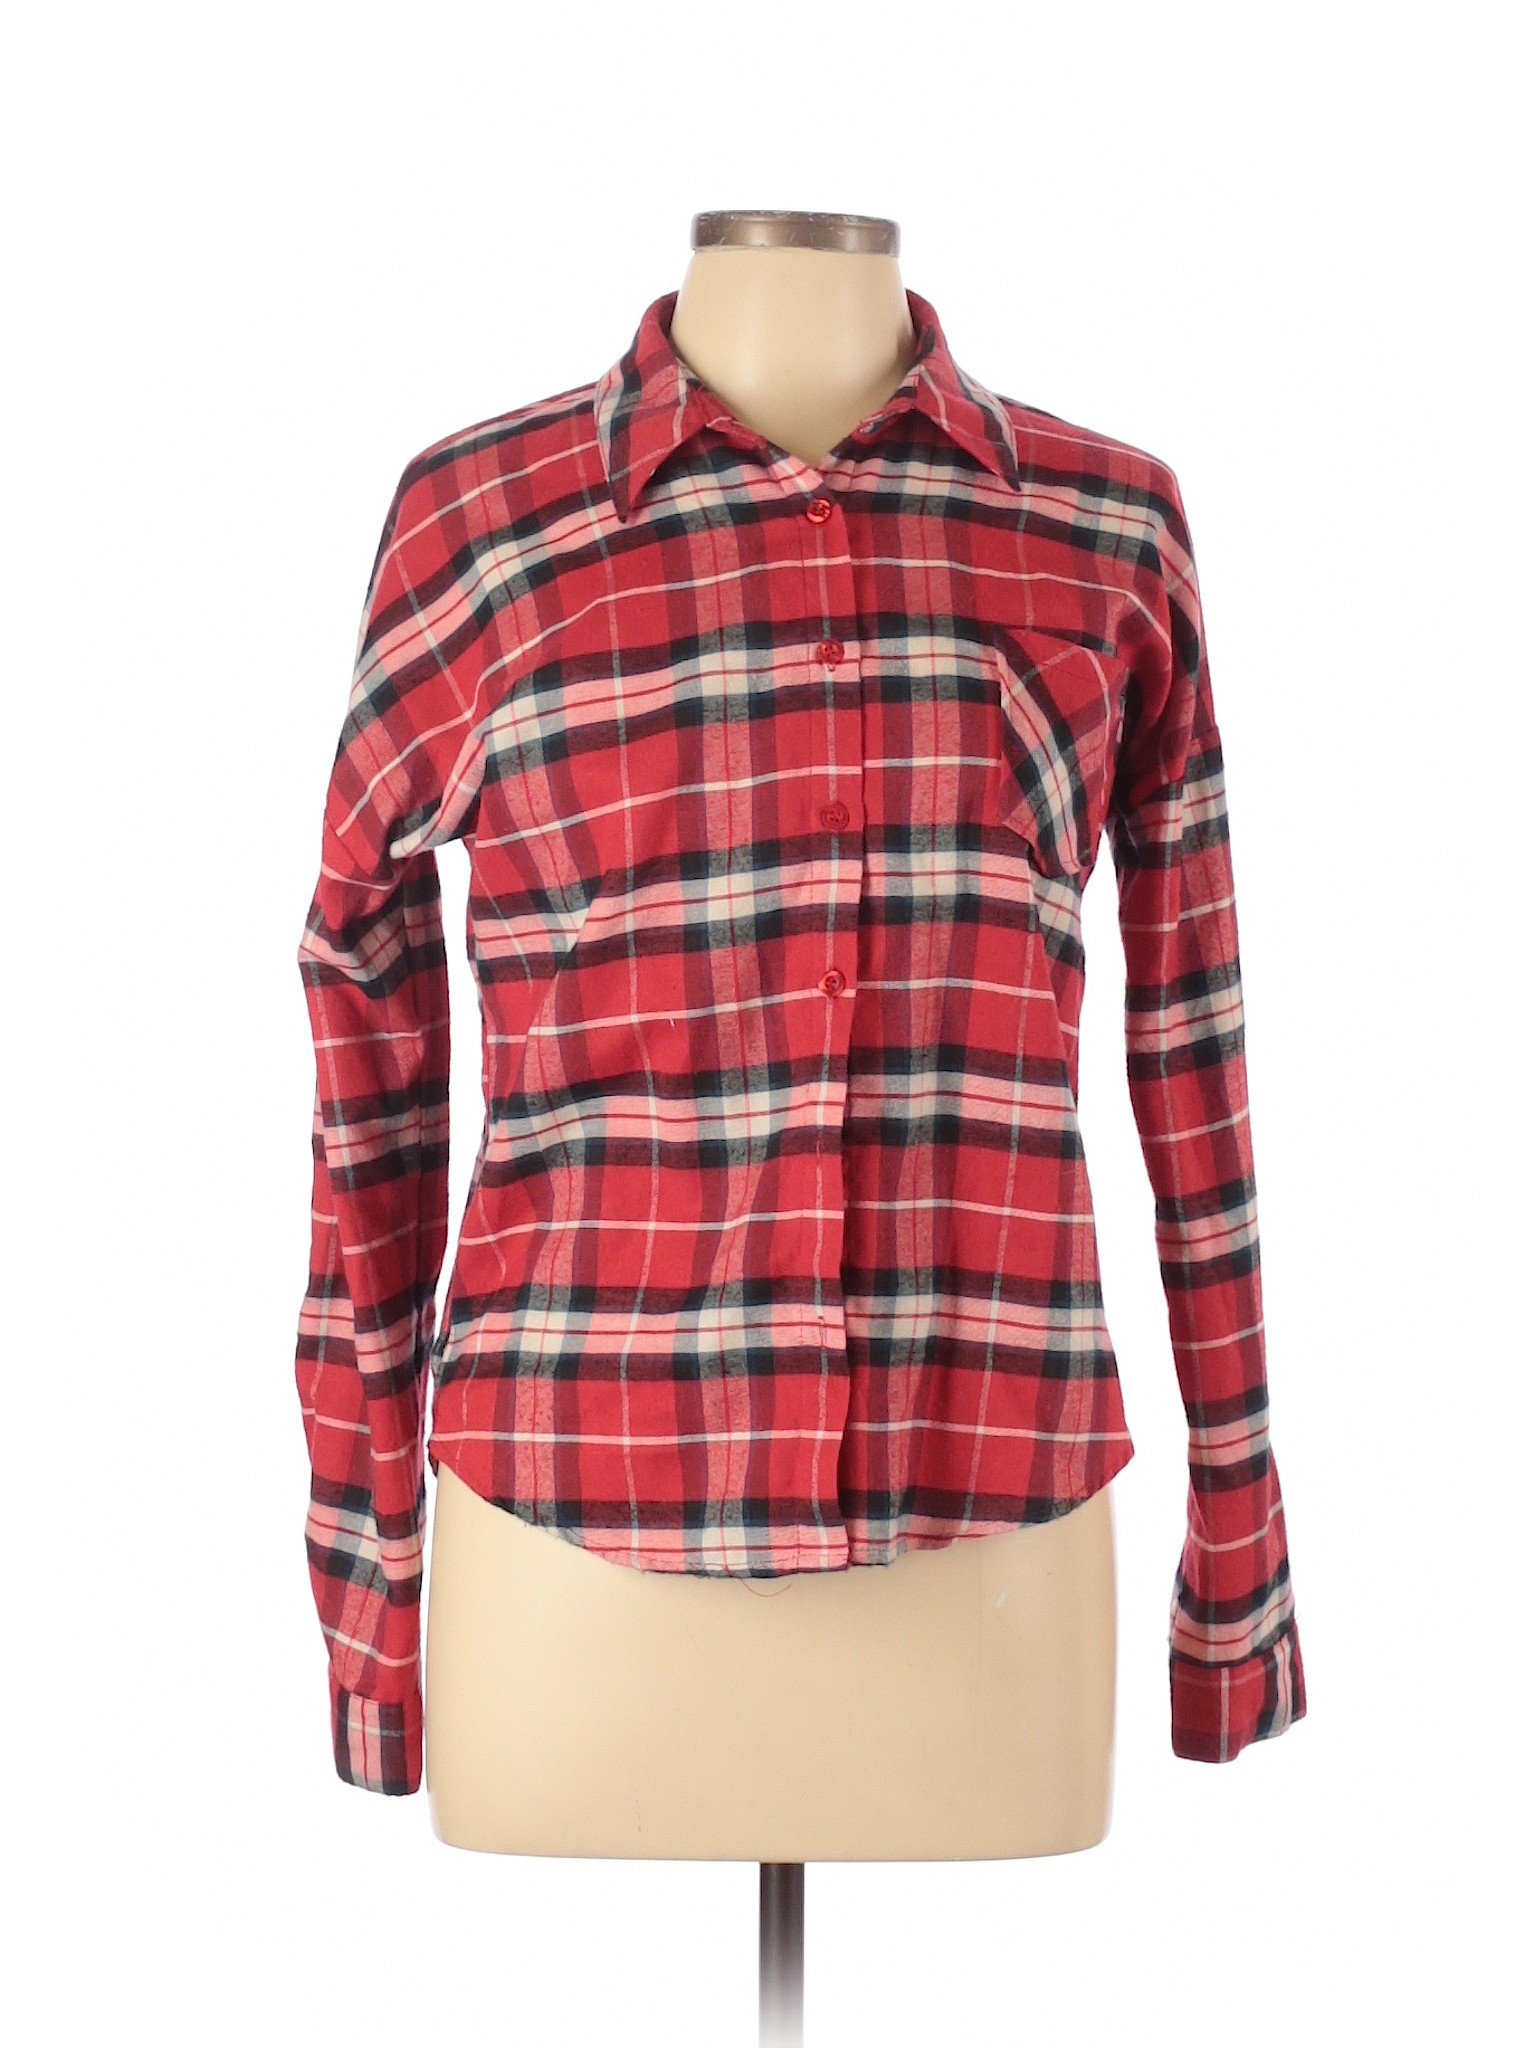 Blu Pepper Women Red Long Sleeve Button-Down Shirt M | eBay